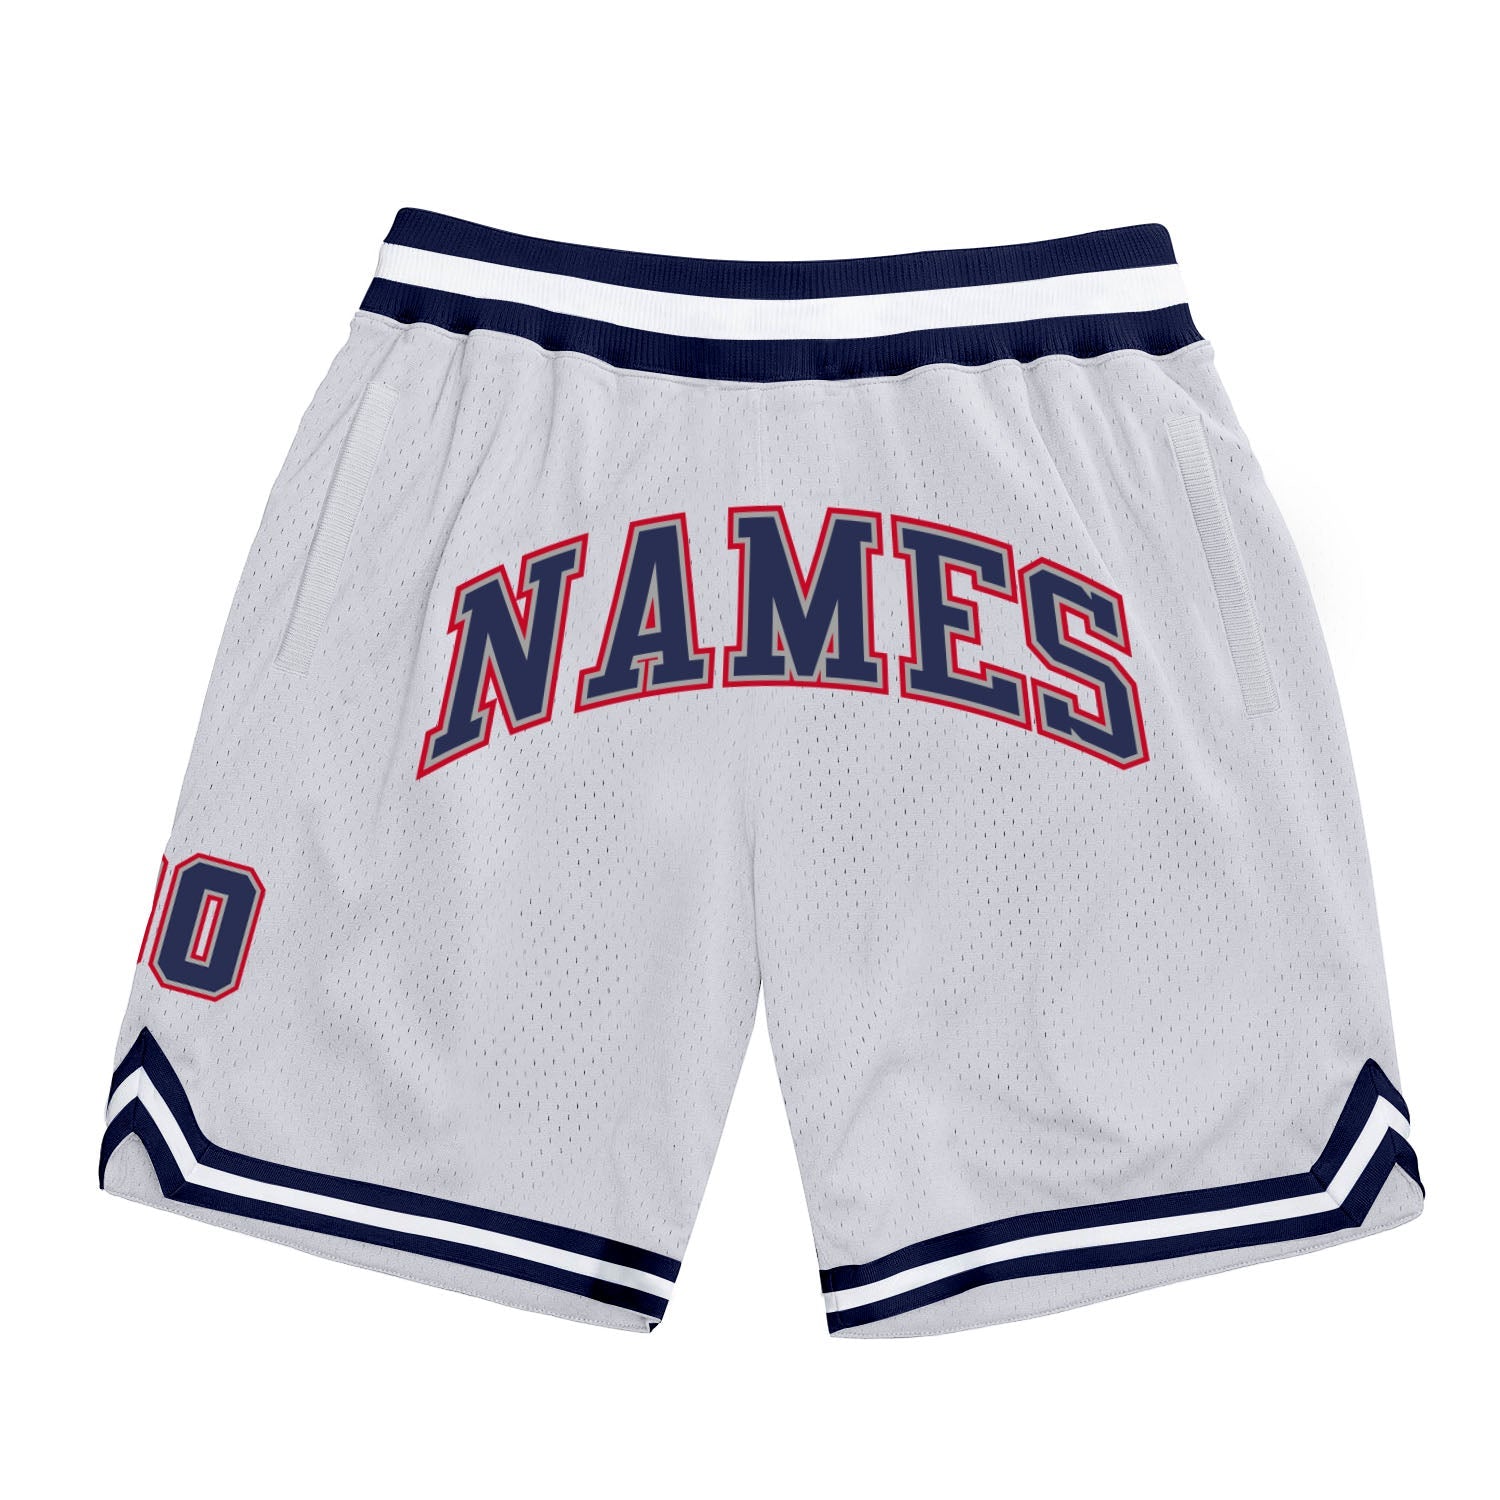 Shorts de basquete autênticos, brancos, vermelhos marinho e personalizados